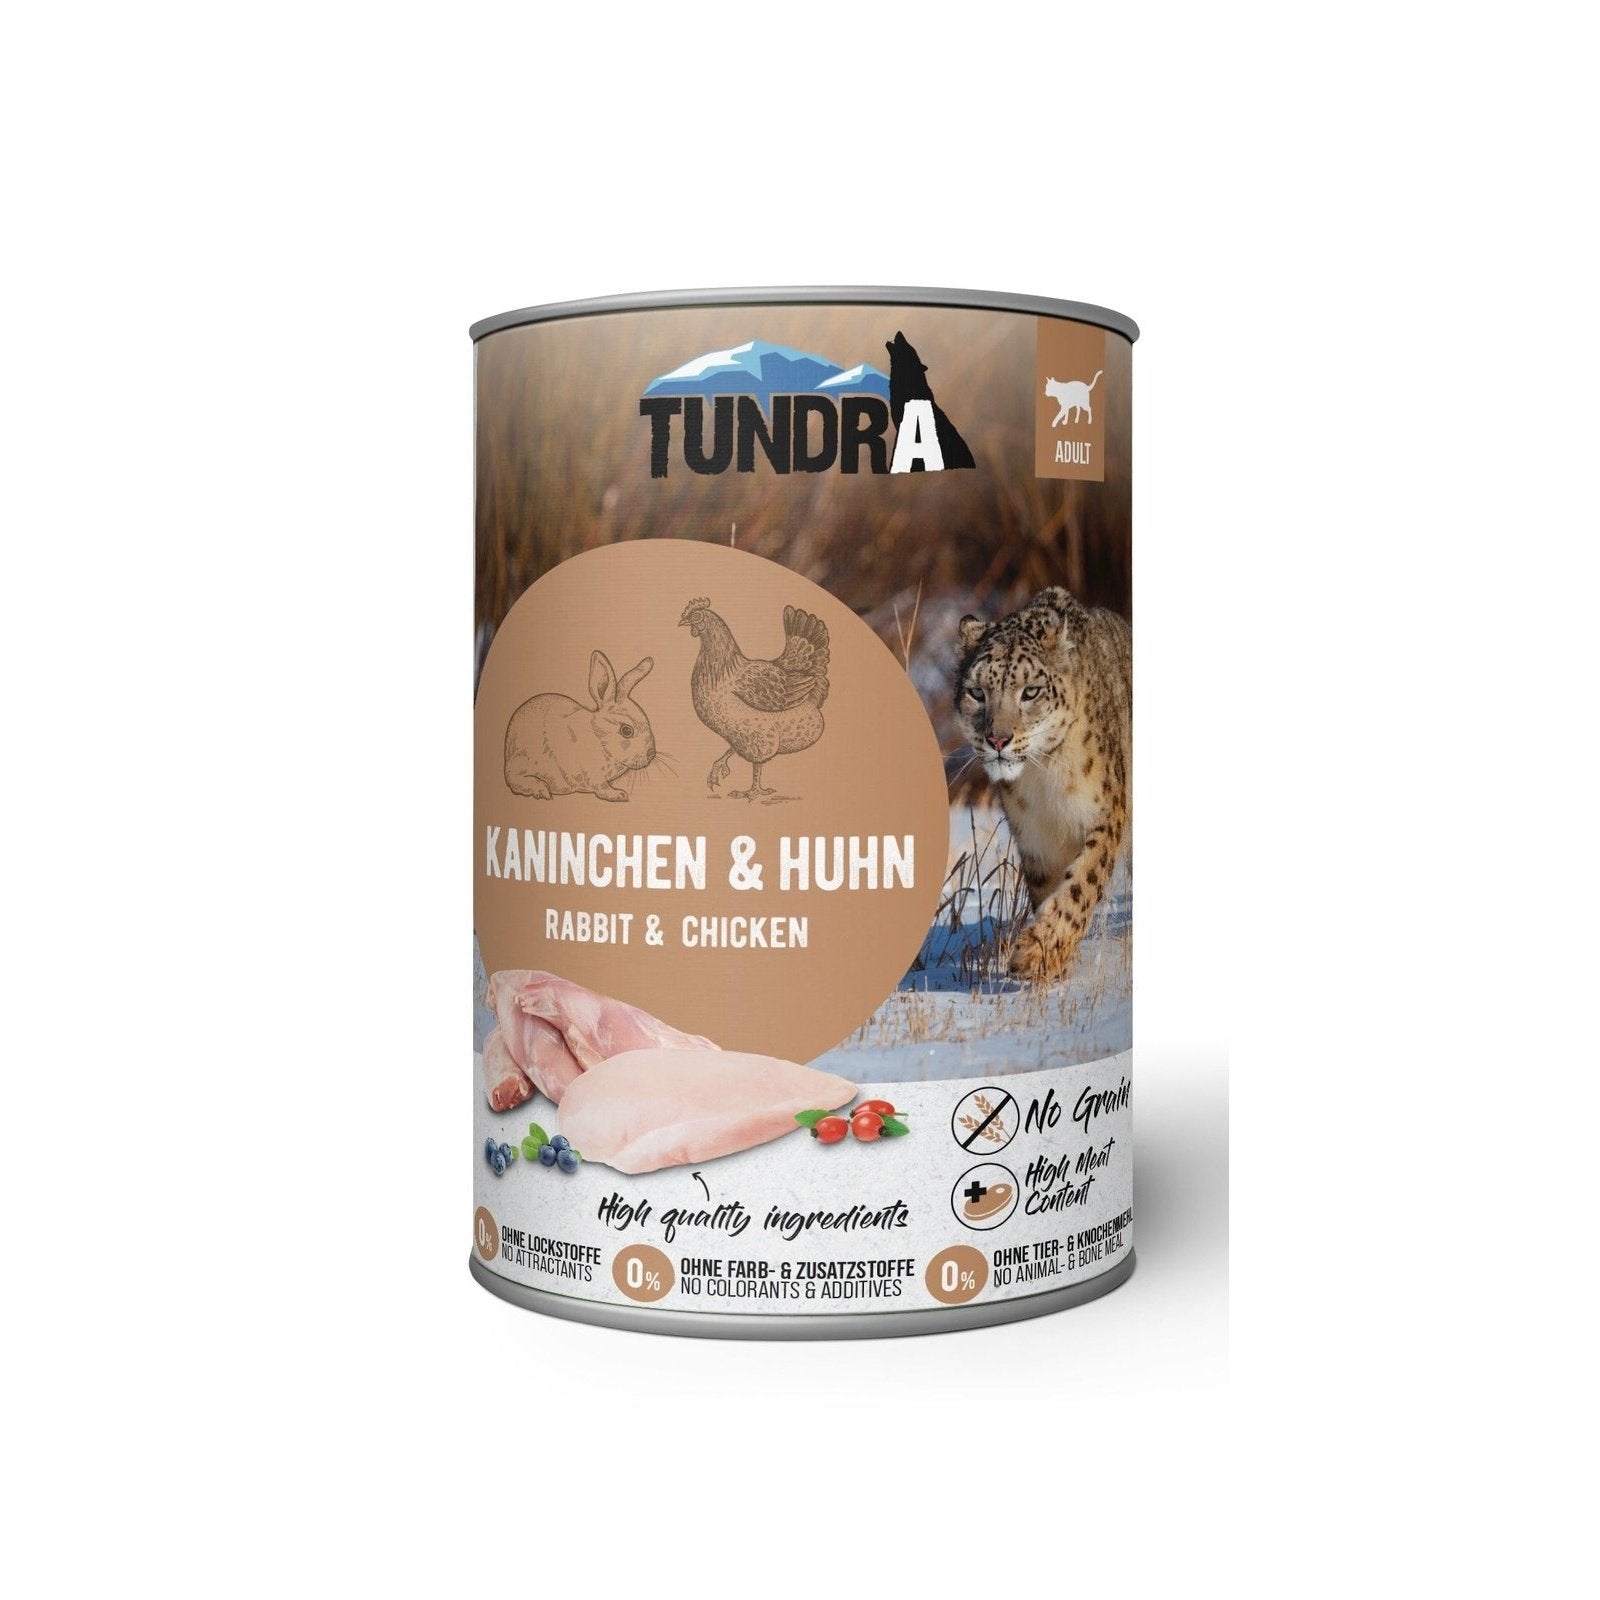 Artikel mit dem Namen Tundra Katze Kaninchen & Huhn Dose im Shop von zoo.de , dem Onlineshop für nachhaltiges Hundefutter und Katzenfutter.